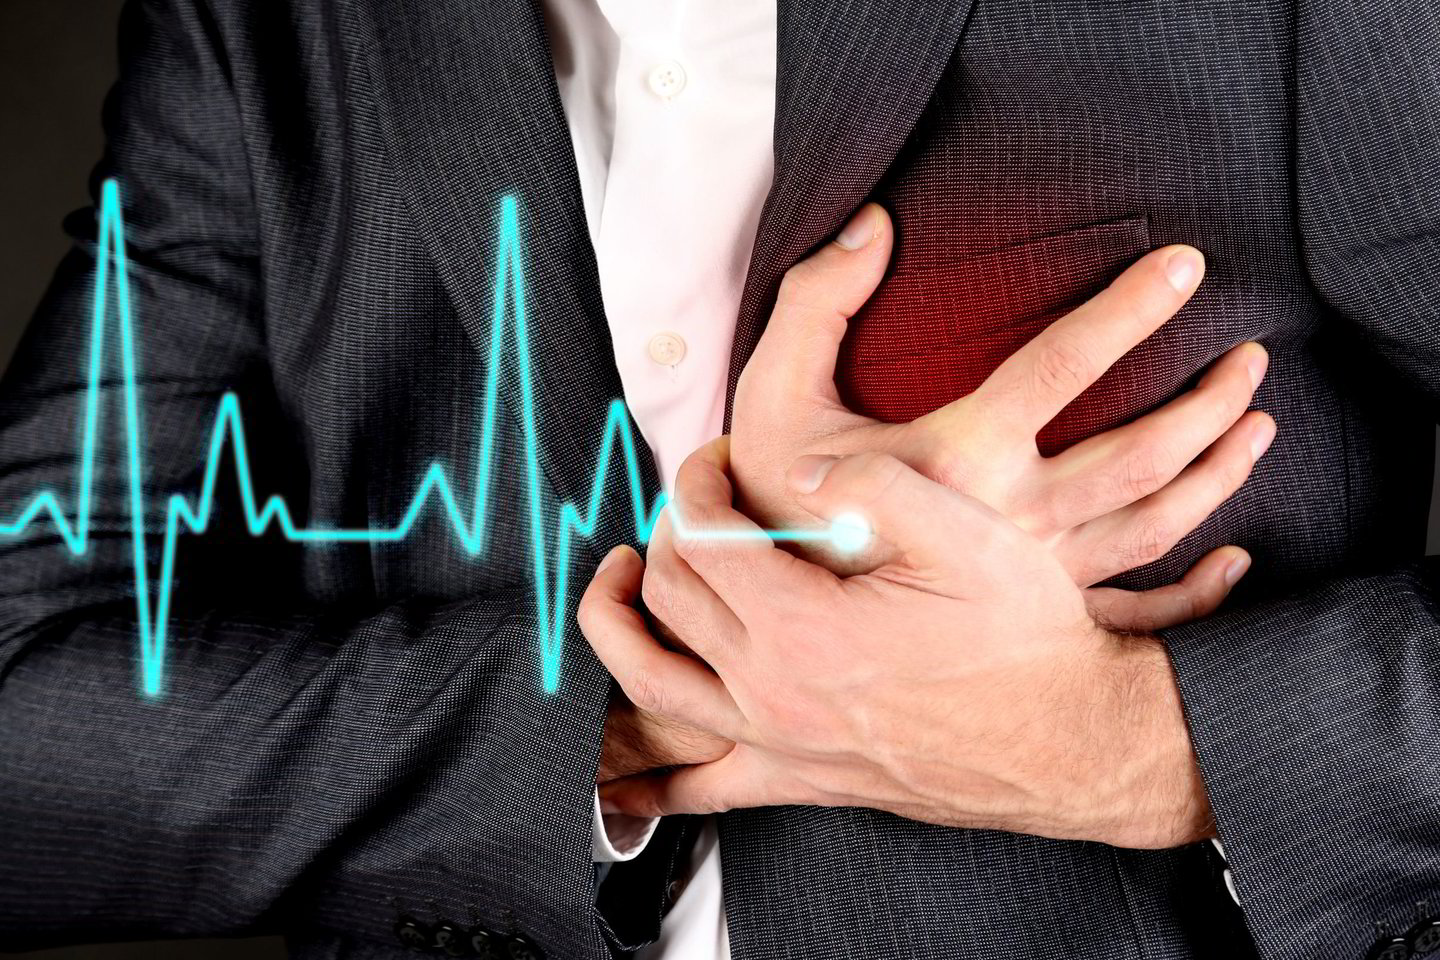  Kalio trūkumas gali sukelti daugybę sveikatos problemų, pvz., širdies ir kraujagyslių ligas.<br> 123rf.com nuotr.